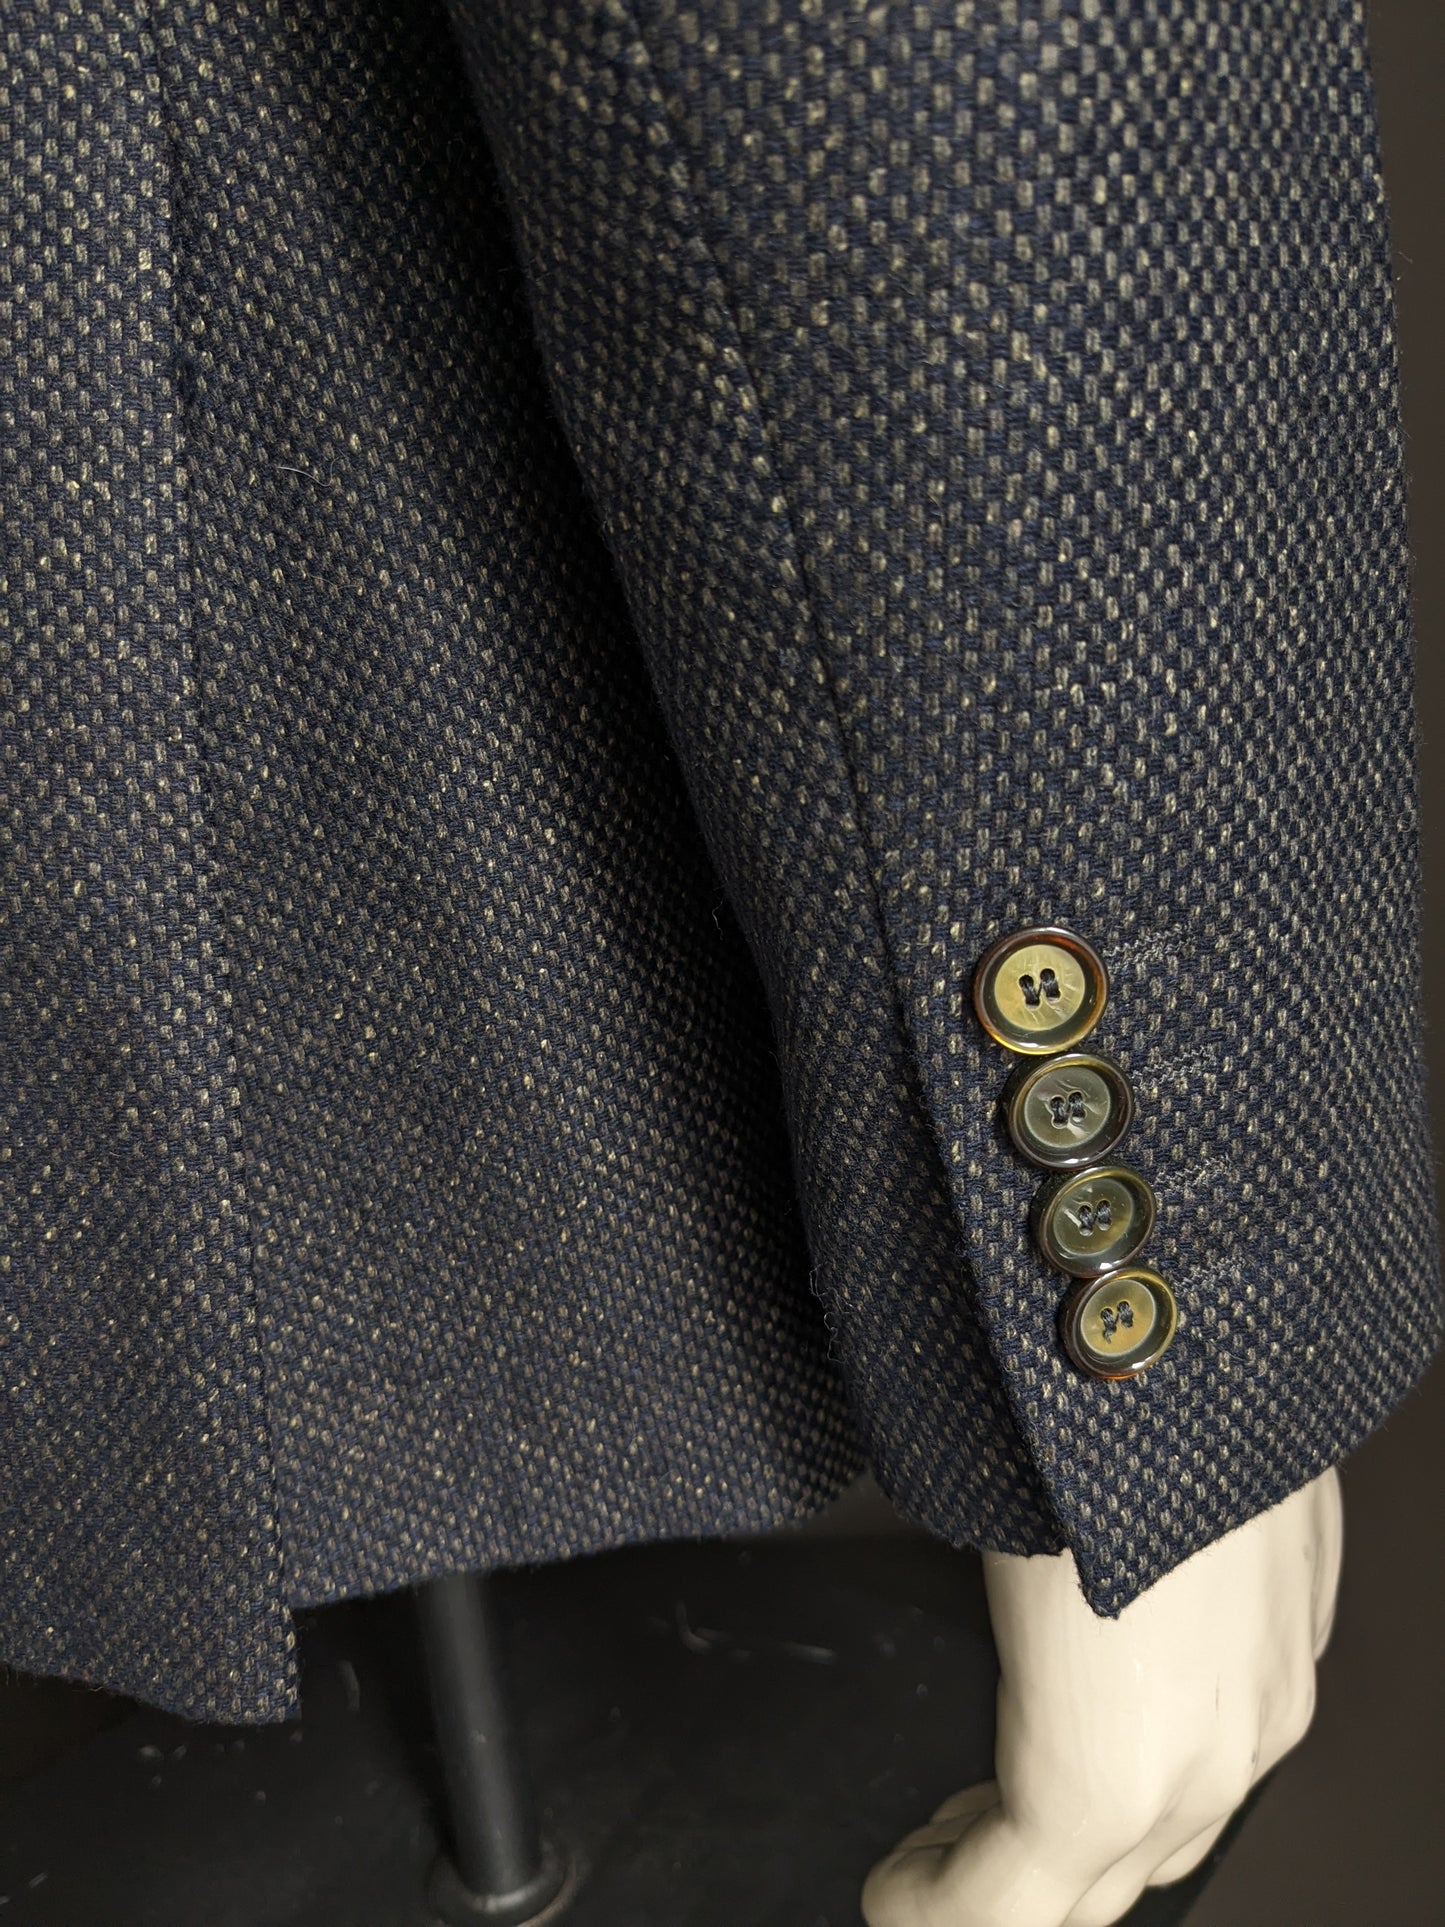 Digel woolen jacket. Green dark blue motif. Size 50 / M.